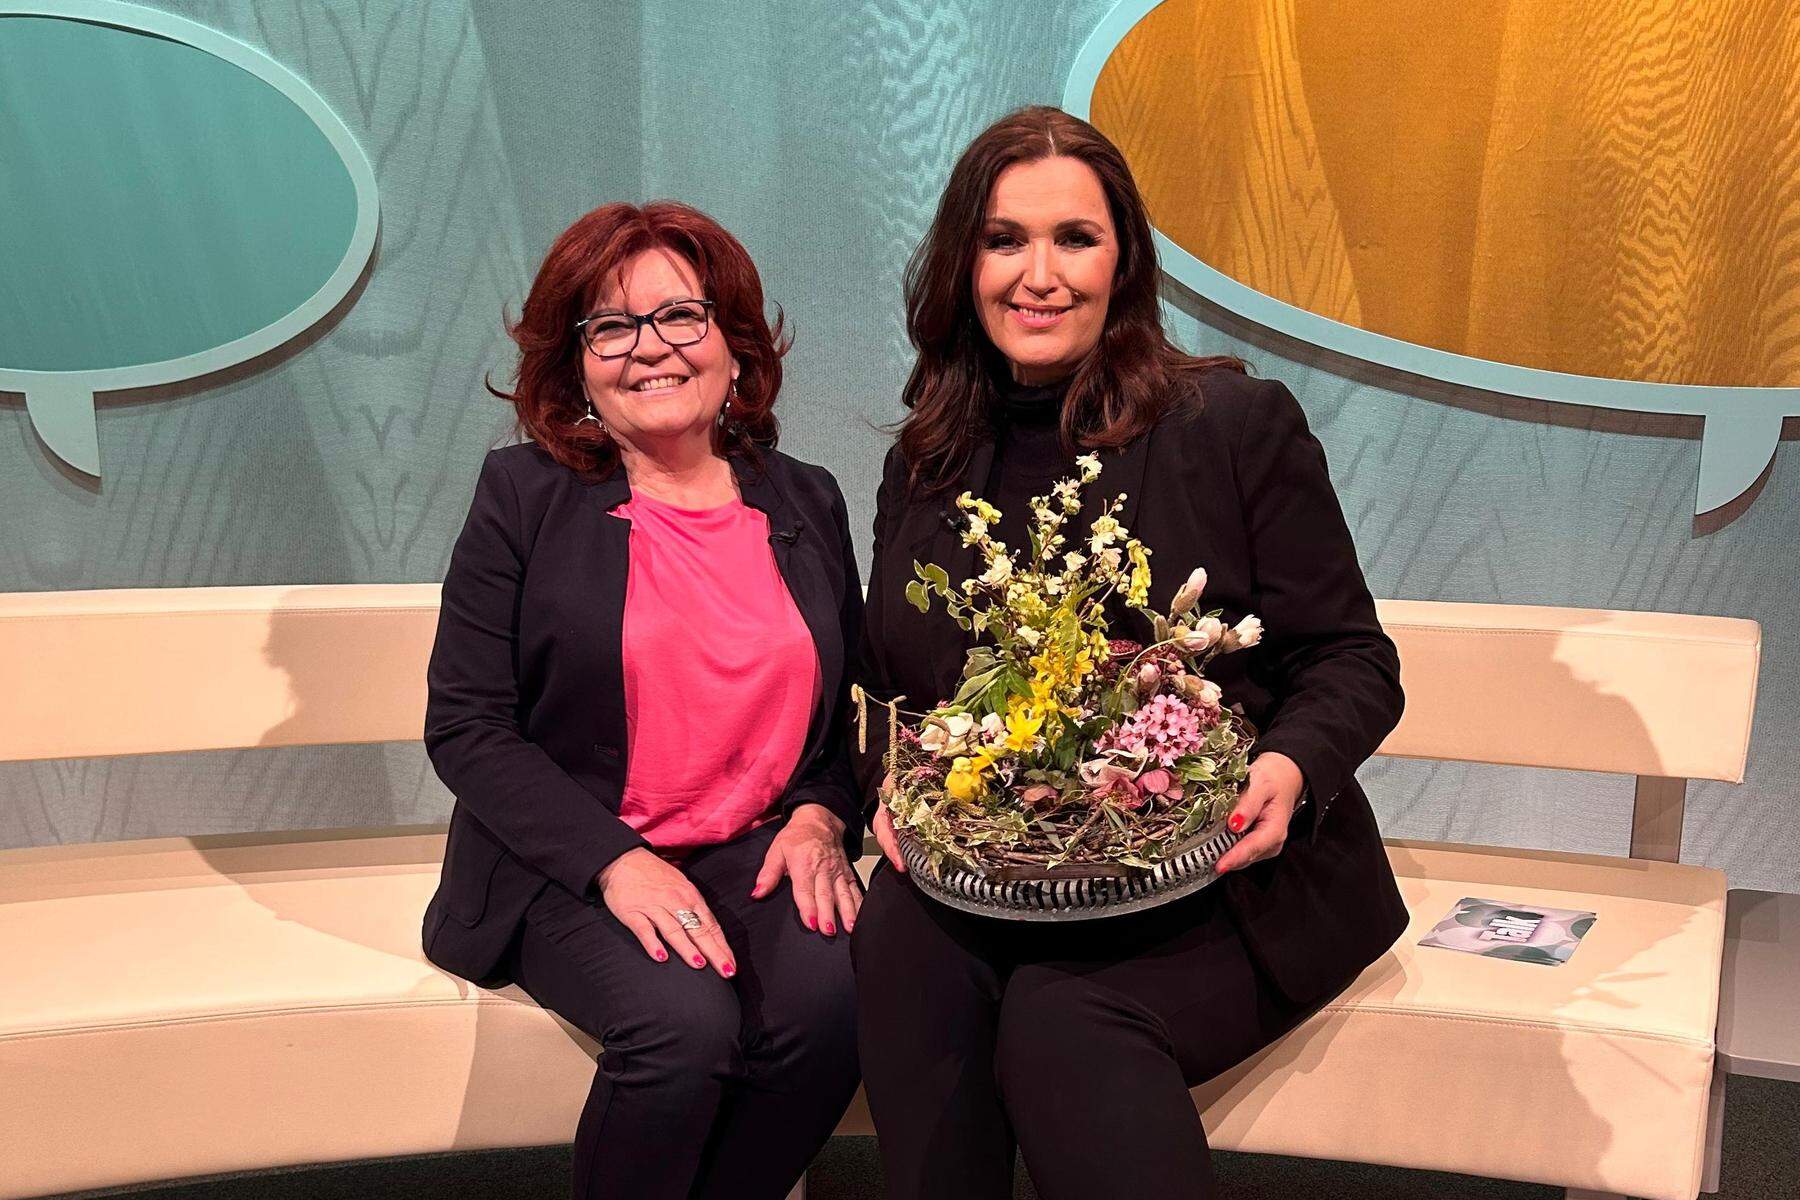 Oststeirer im Fernsehen: Hobby-Gärtnerin und Fleischhauer zu Gast in Show von Barbara Karlich